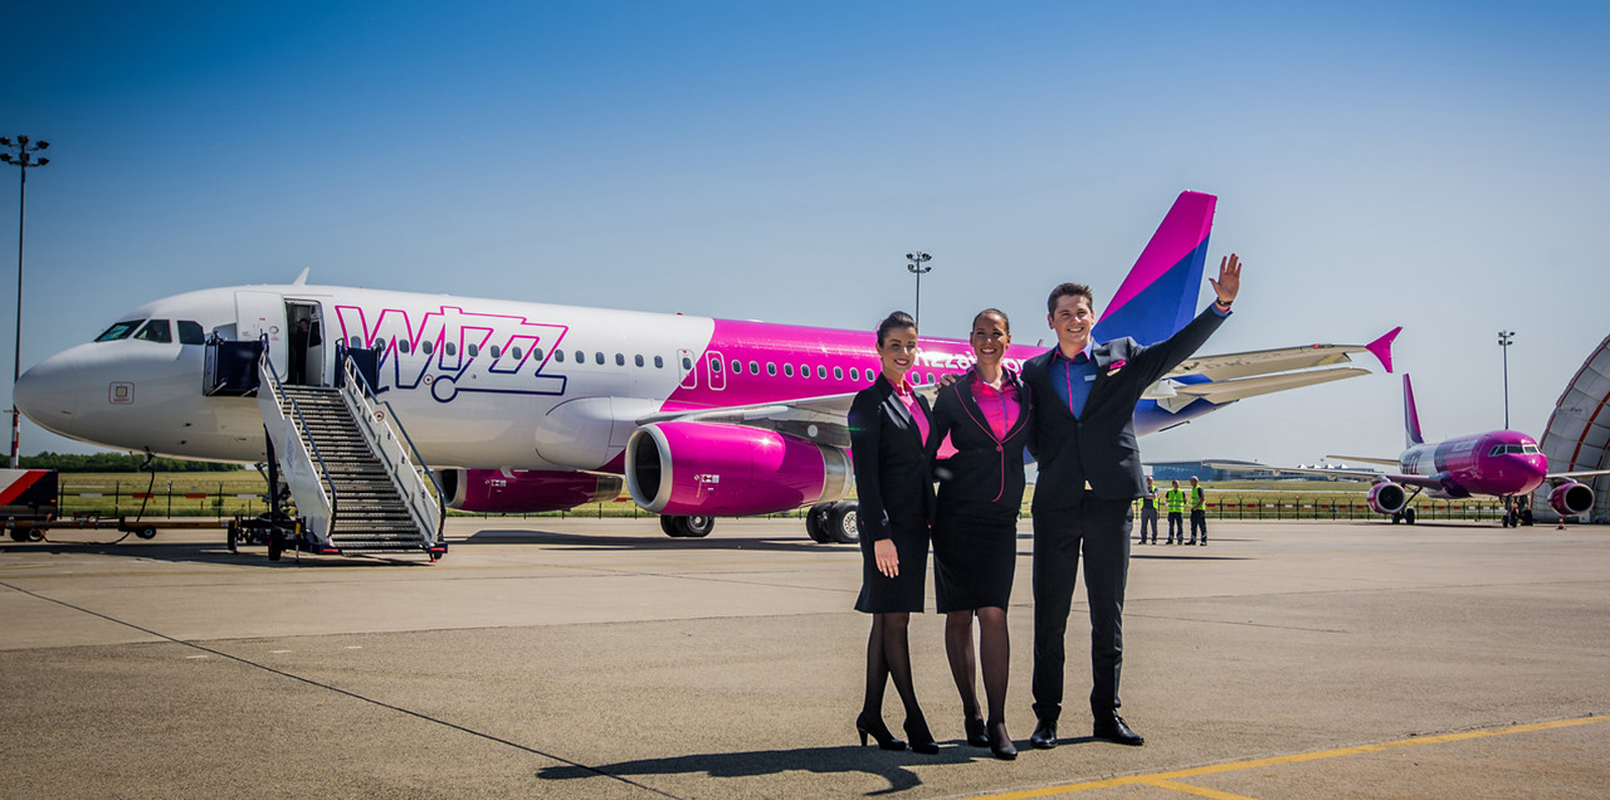 Wizzair москва. Wizz Air самолеты. Венгерская авиакомпания Wizzair. Wizz Air lowcoster. Авиакомпания Wizz Air полет.